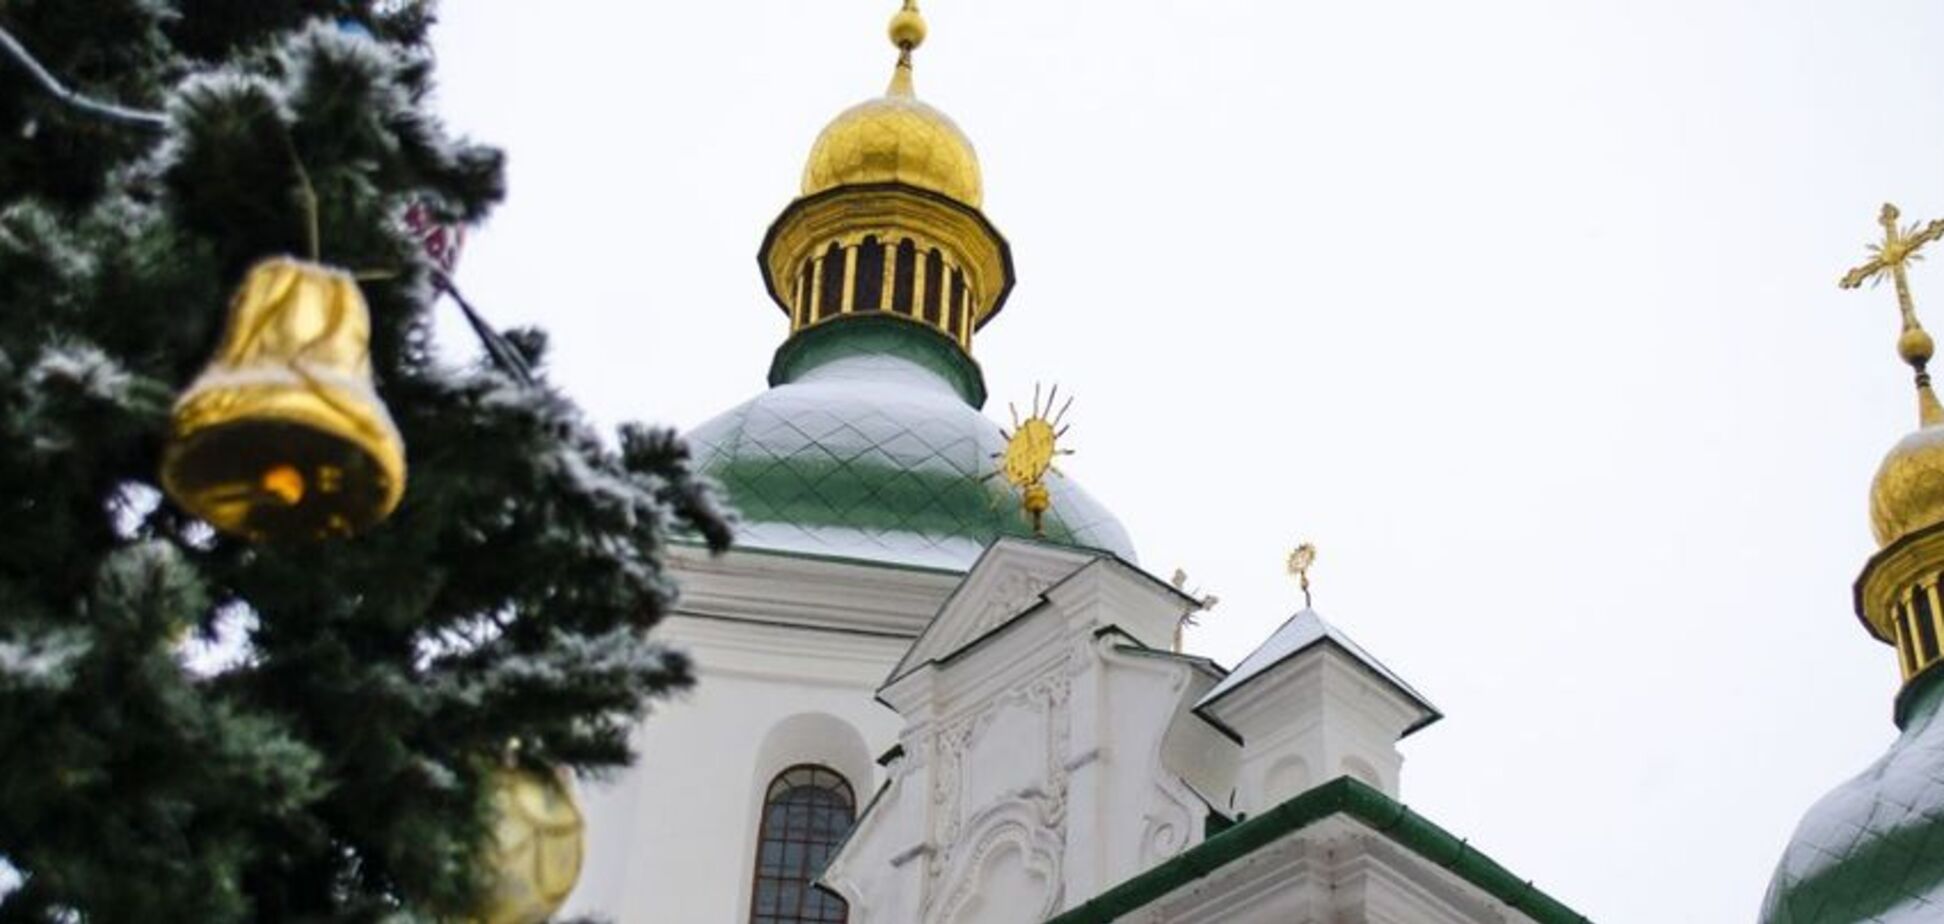  Не ПЦУ: Филарет озвучил настоящее название новой церкви в Украине